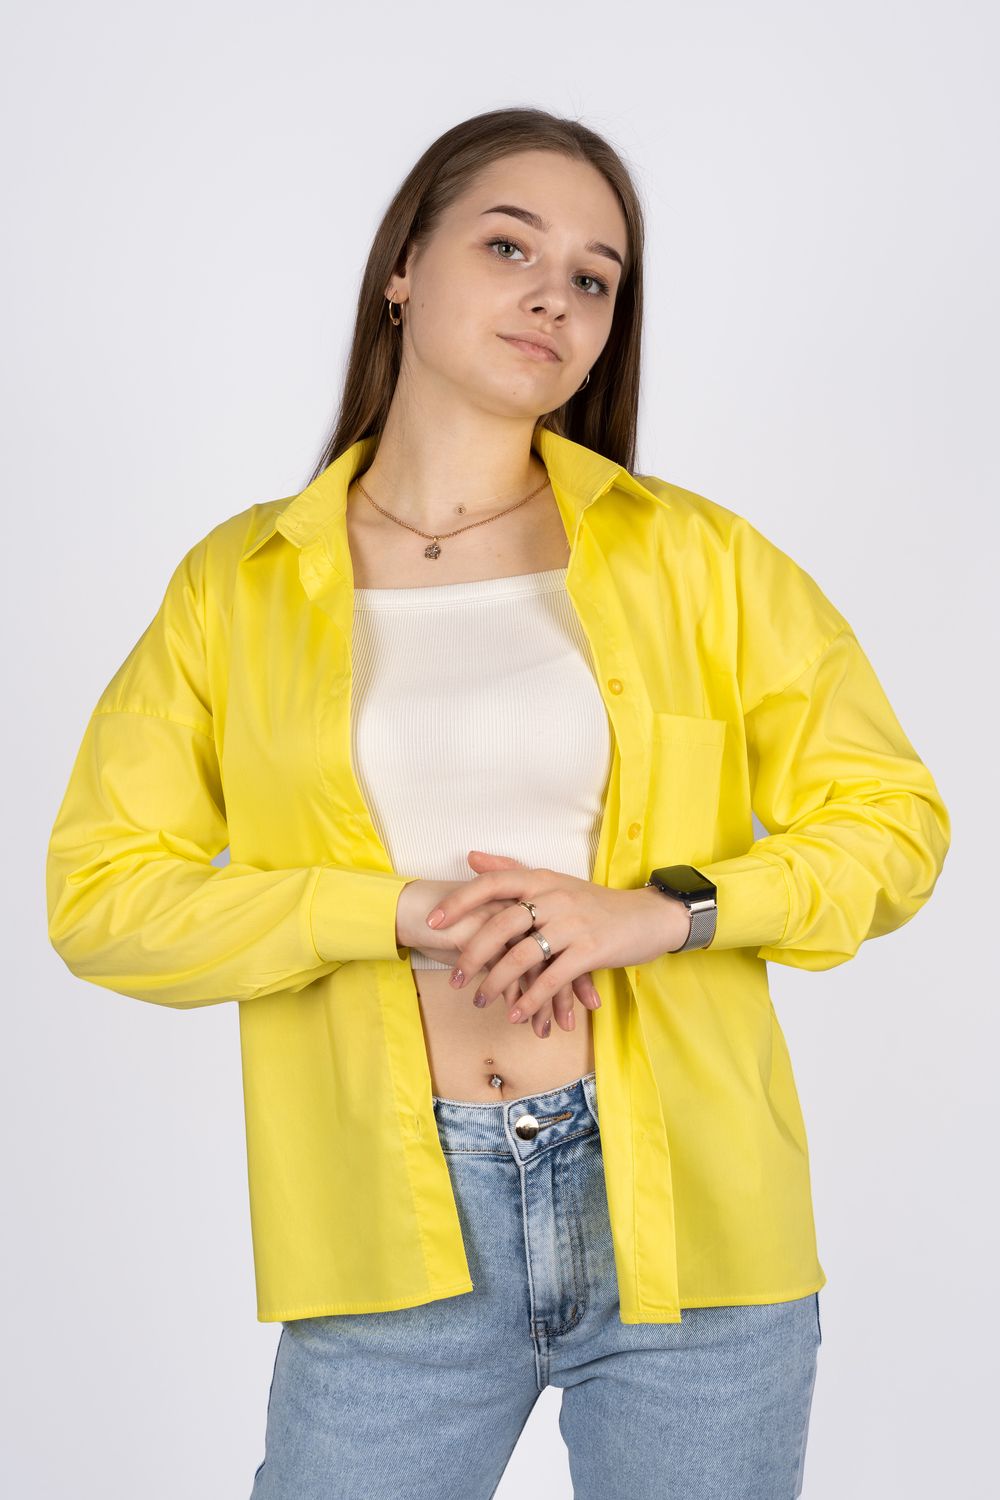 Джемпер (рубашка) женский 6359 - желтый